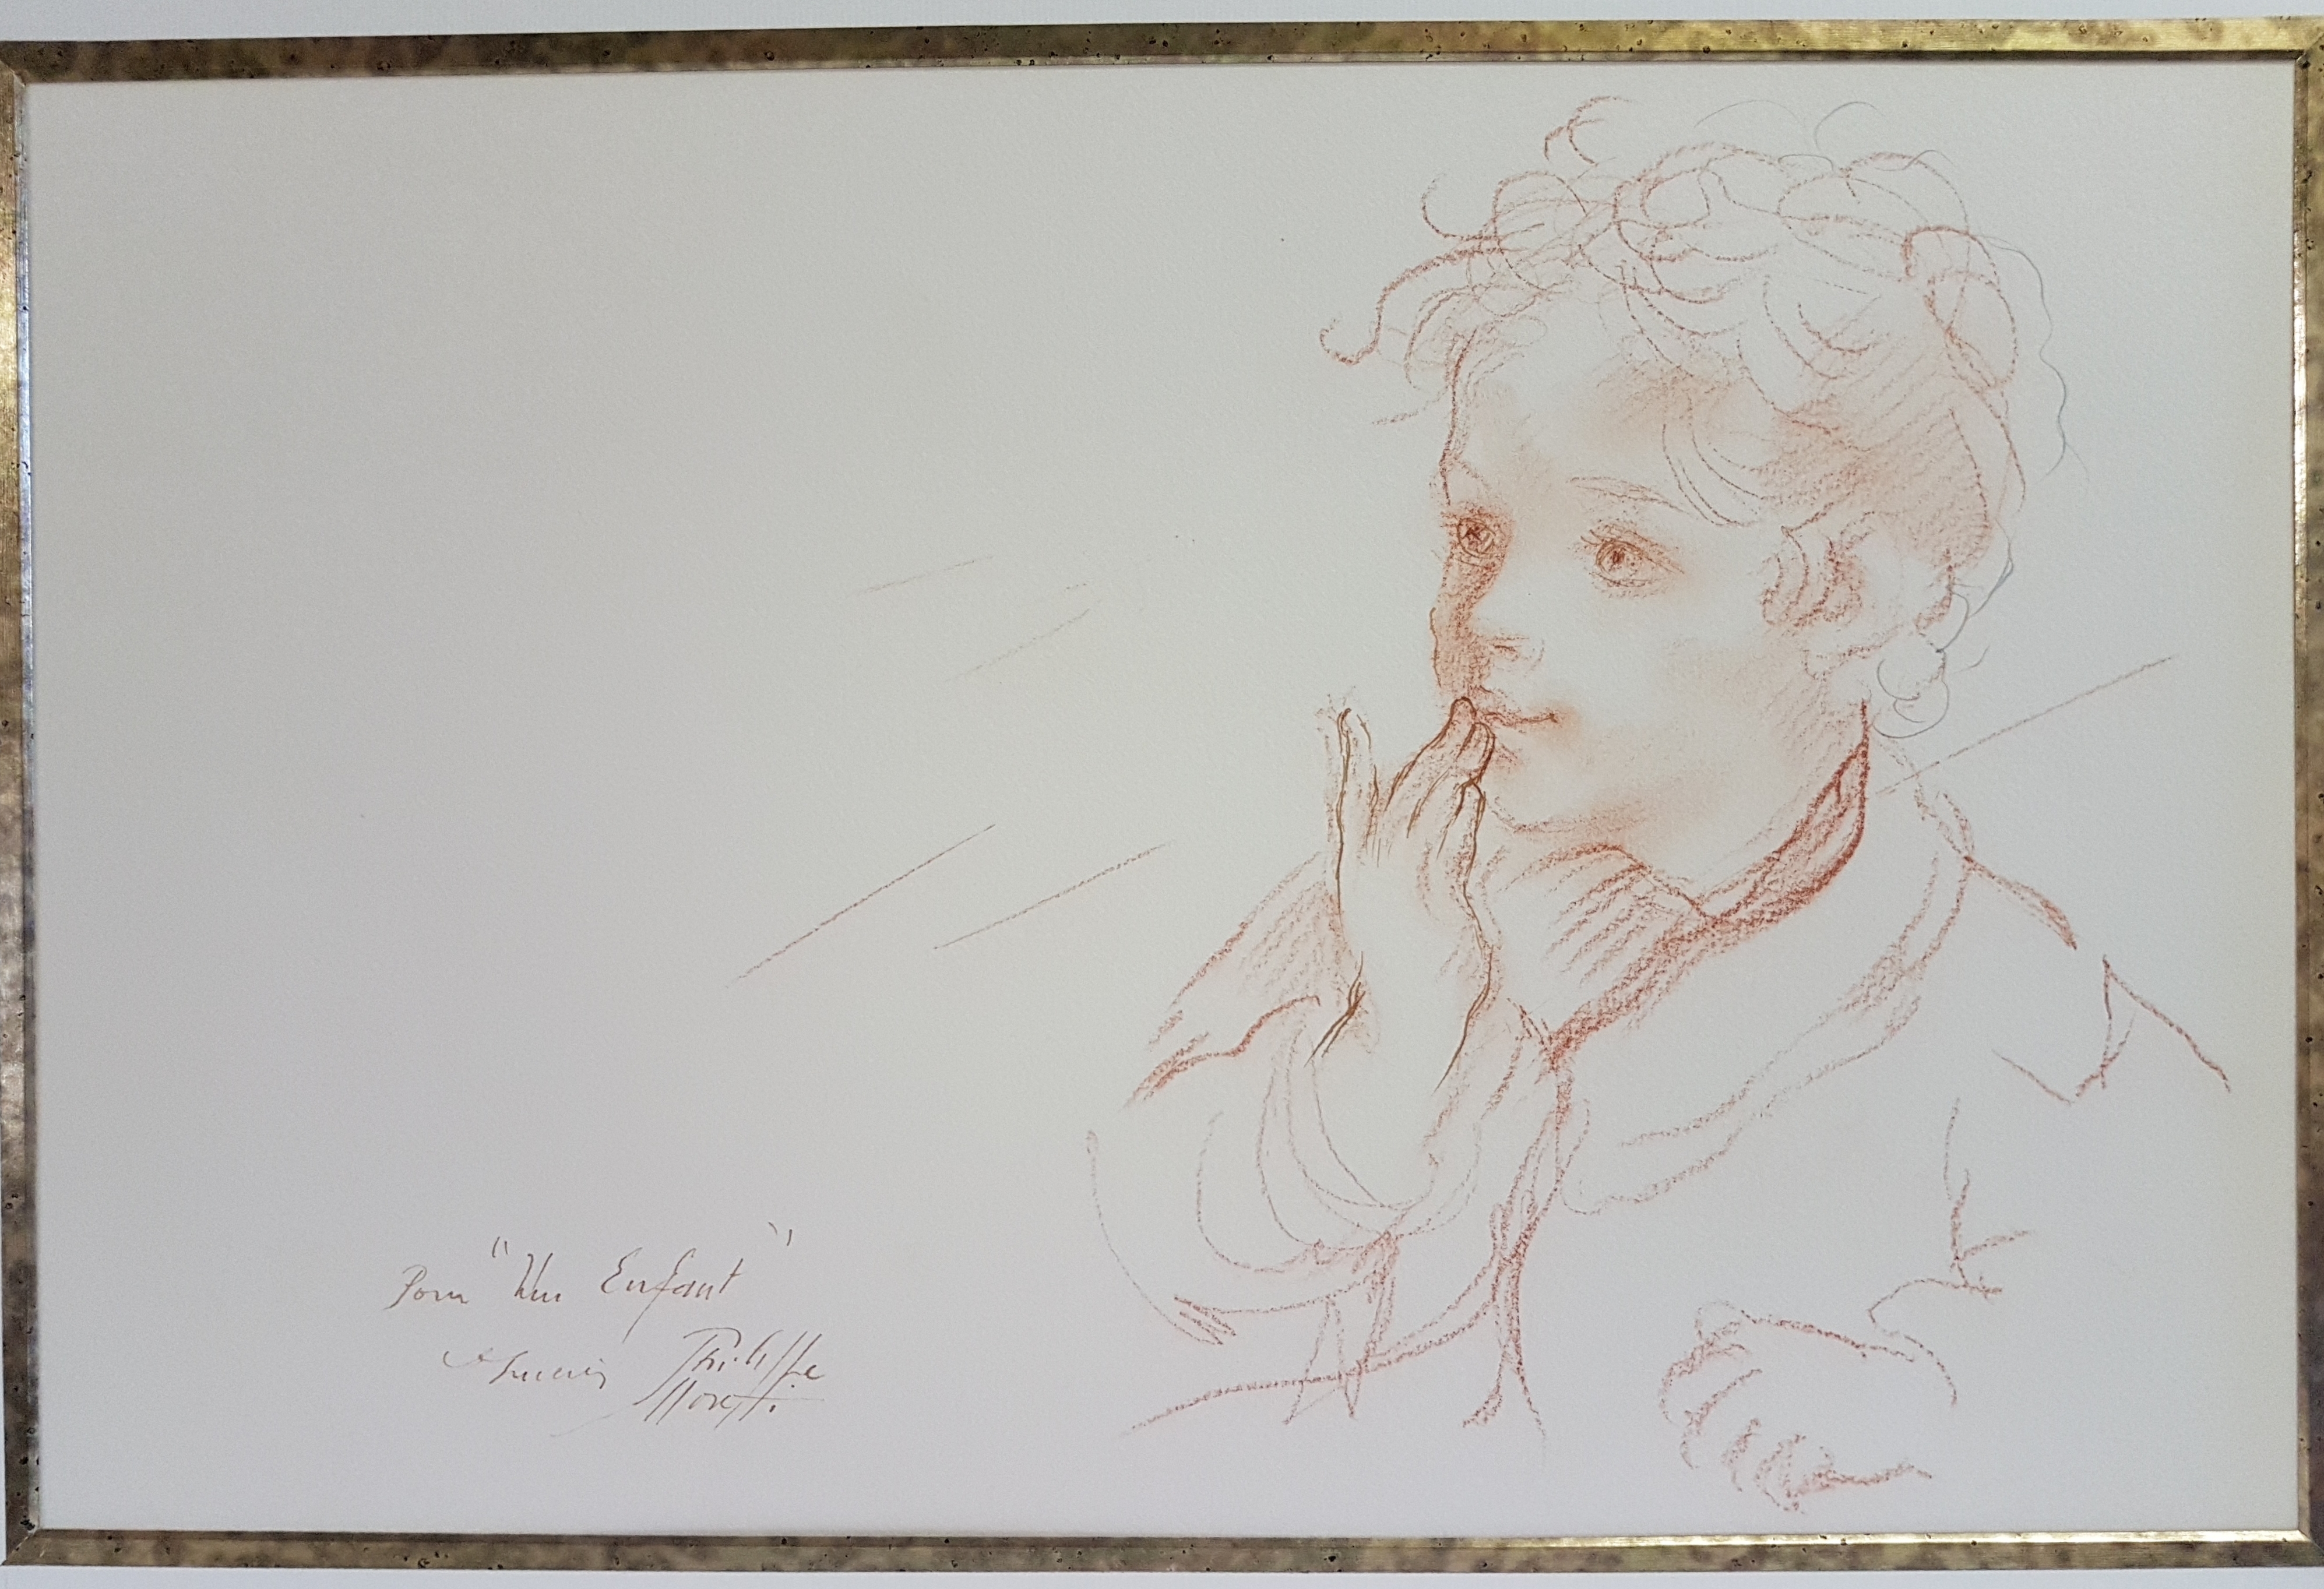 Lucien-Phillippe Moretti, Jeune fille au piano